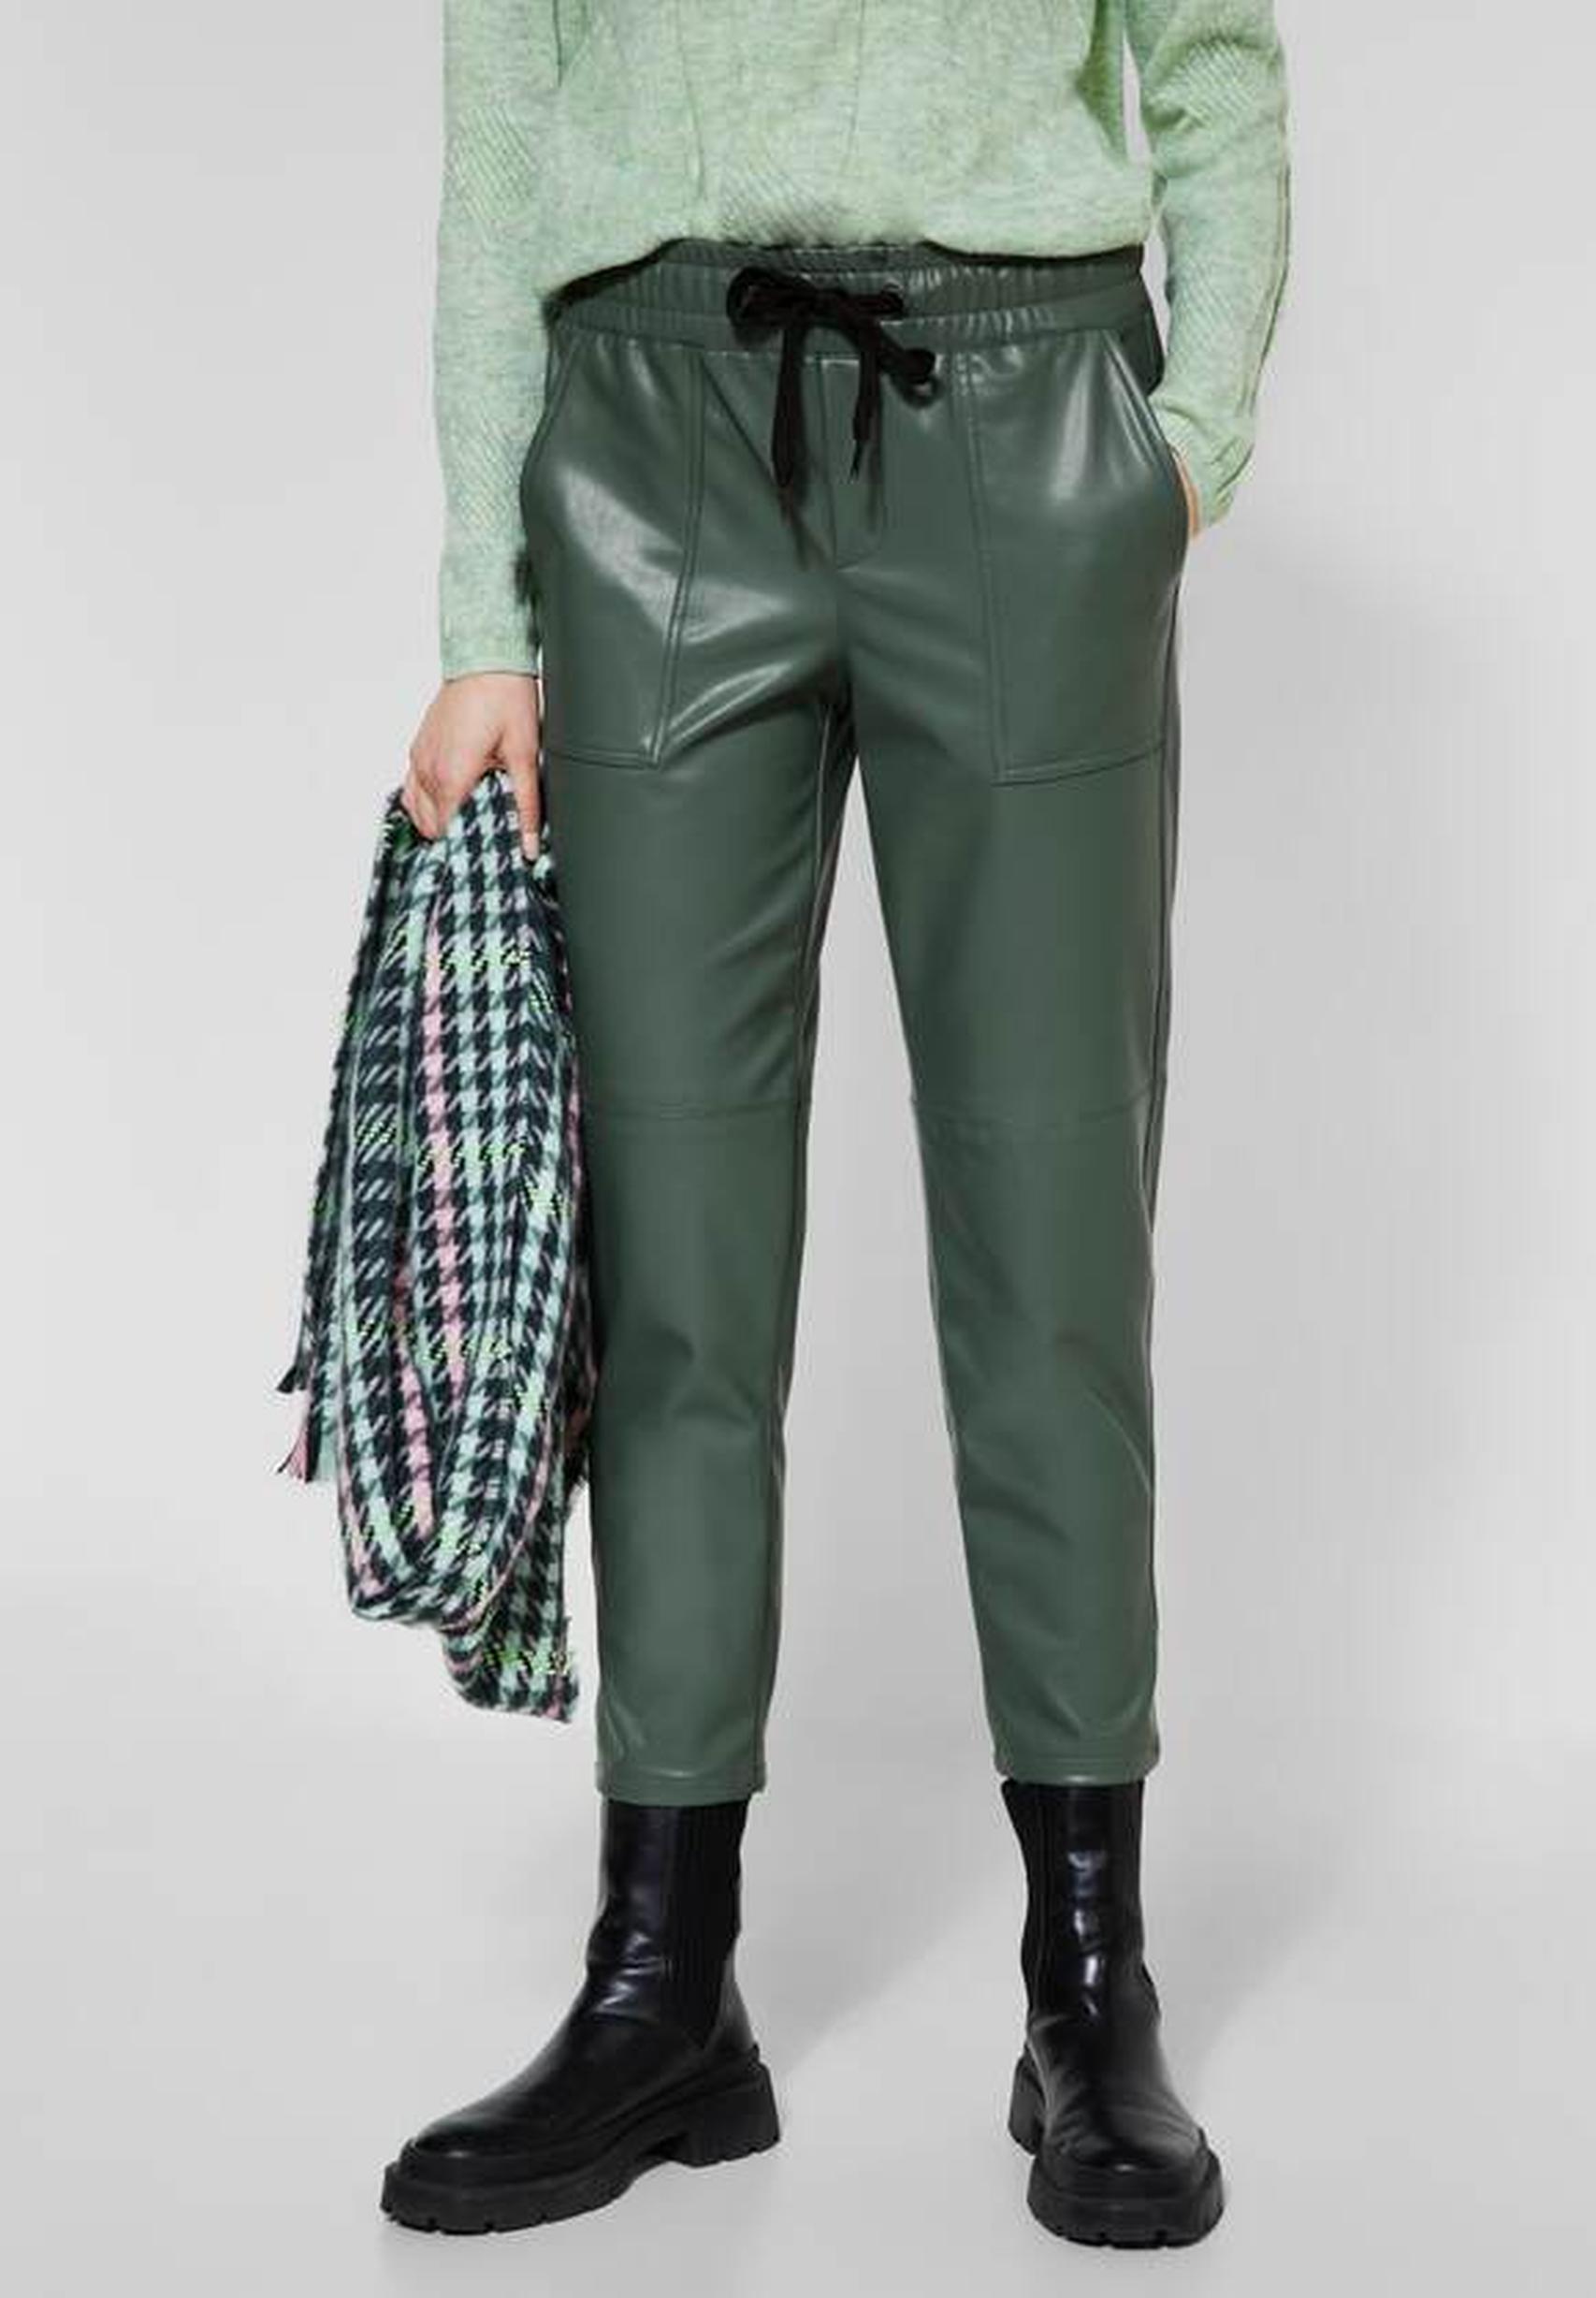 Trendige Lederimitat-Hose aus der Kollektion von Street One in dark clary  mint - 375850